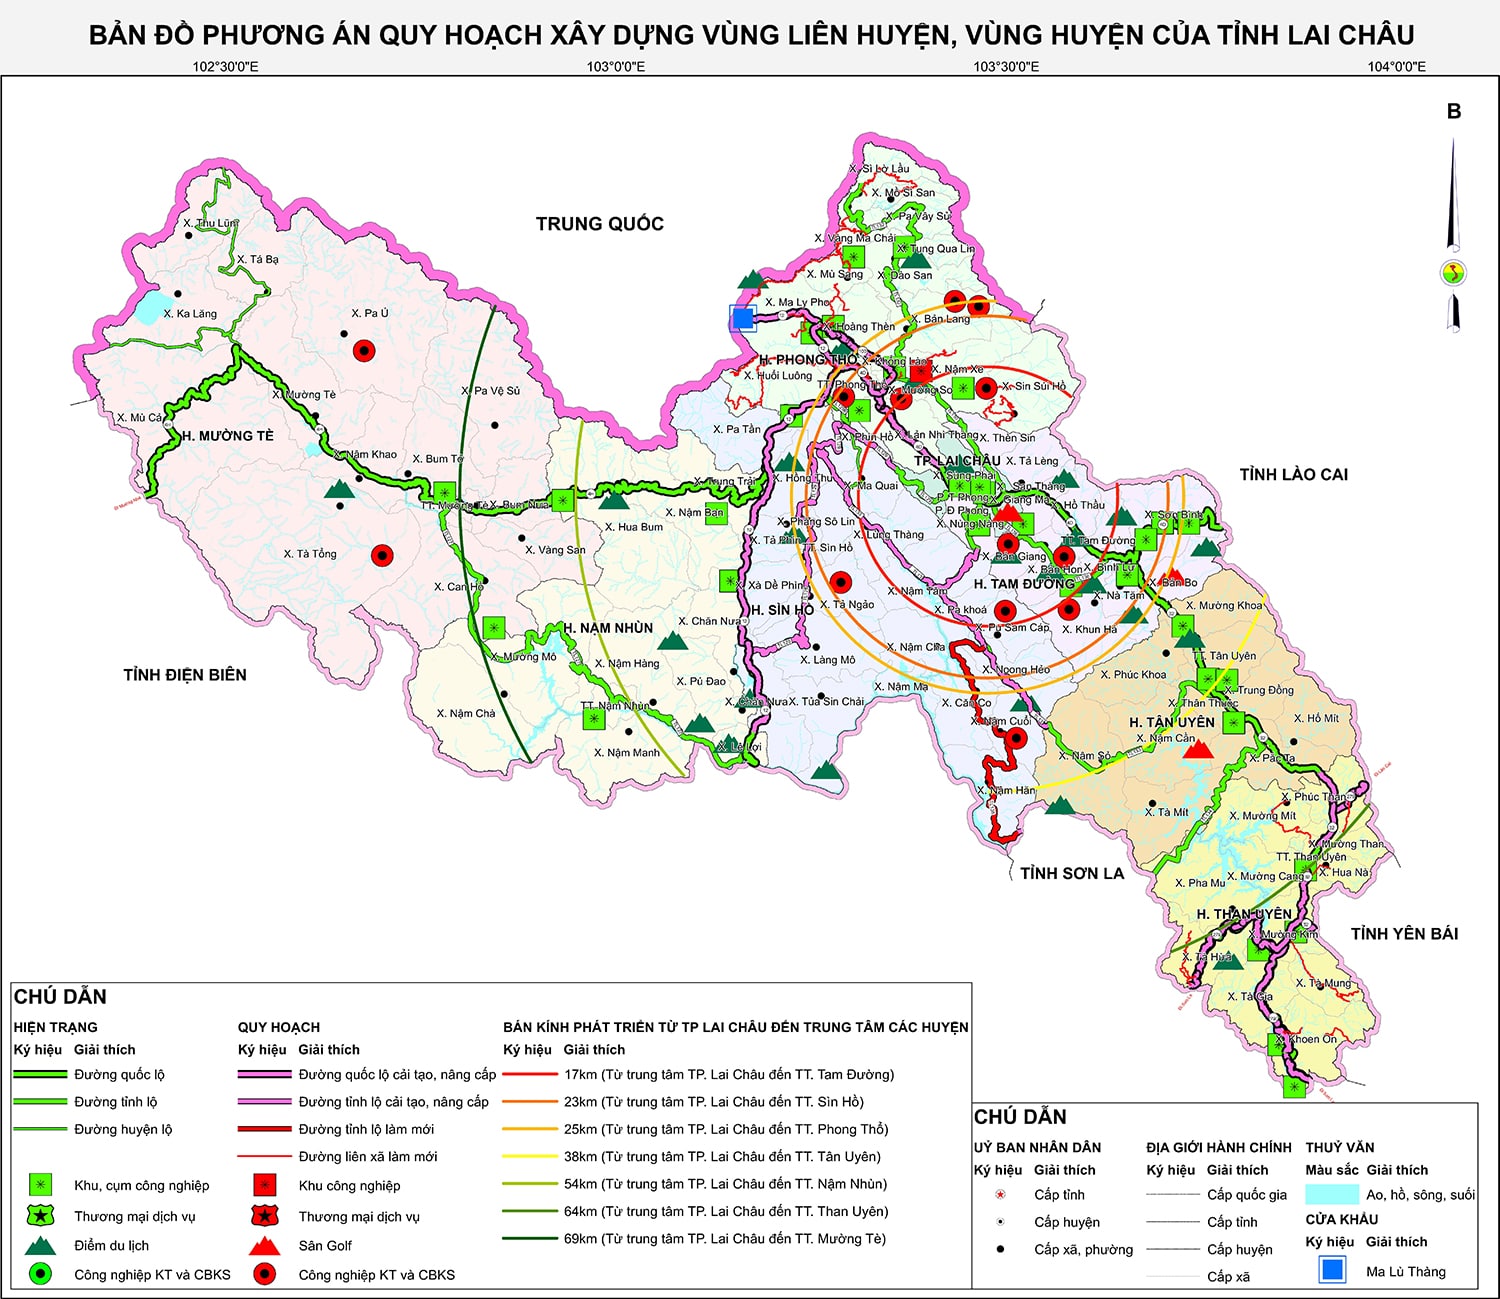 Bản đồ phương án quy hoạch vùng liên huyện, vùng huyện tỉnh Lai Châu giai đoạn 2021 - 2030, tầm nhìn năm 2050